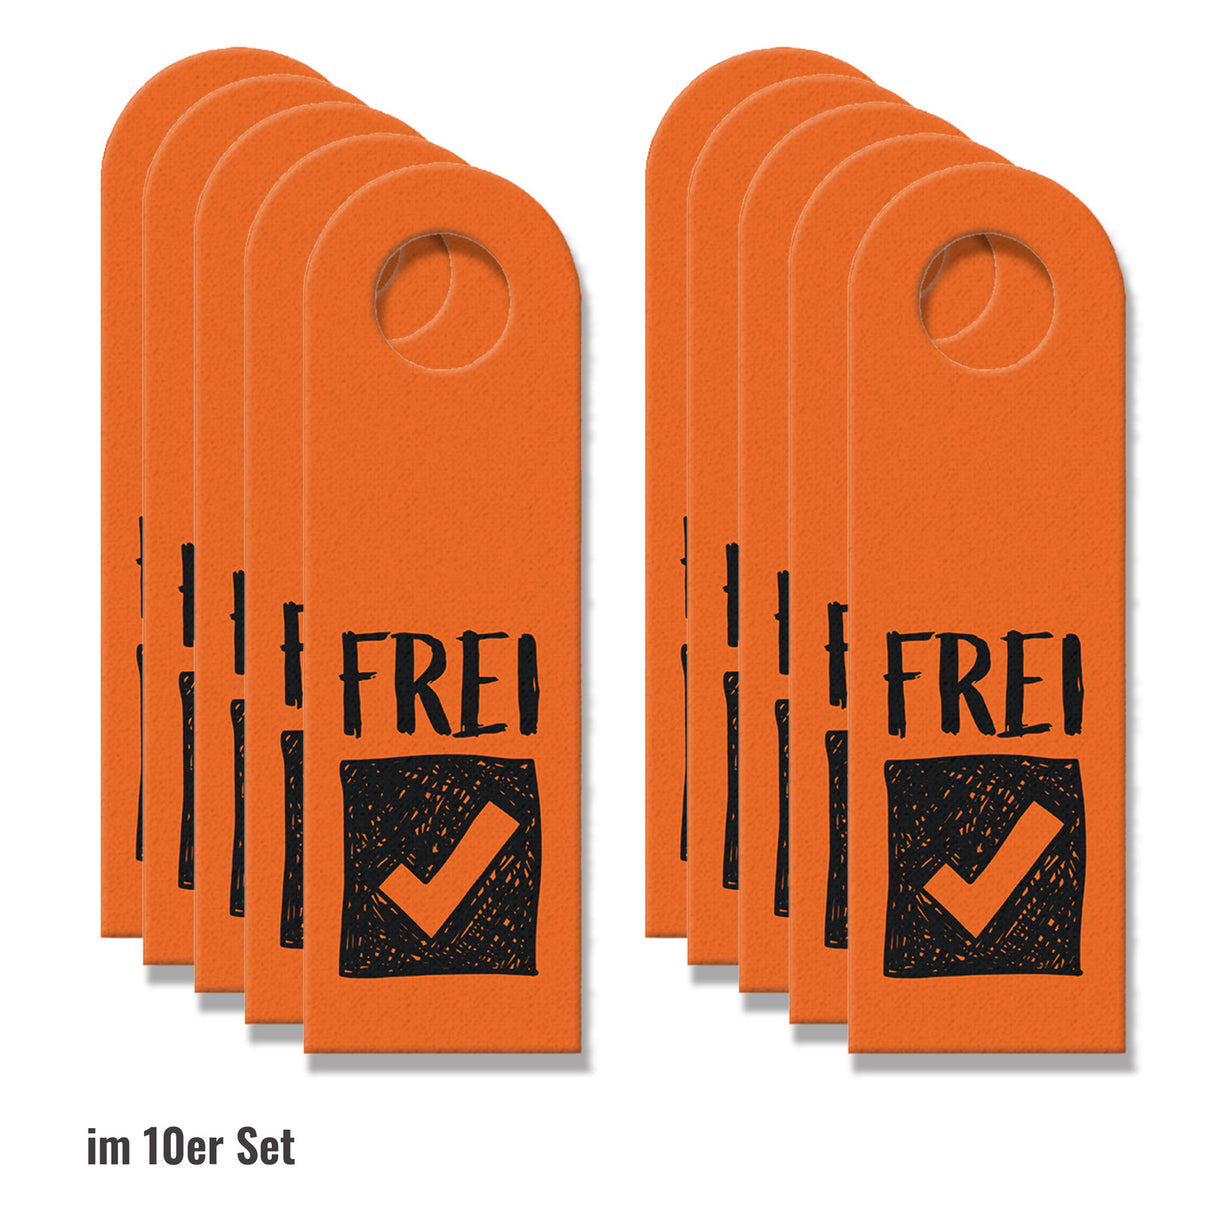 Besetzt oder Frei Türhänger in Orange mit Symbolen für die Toilettentür